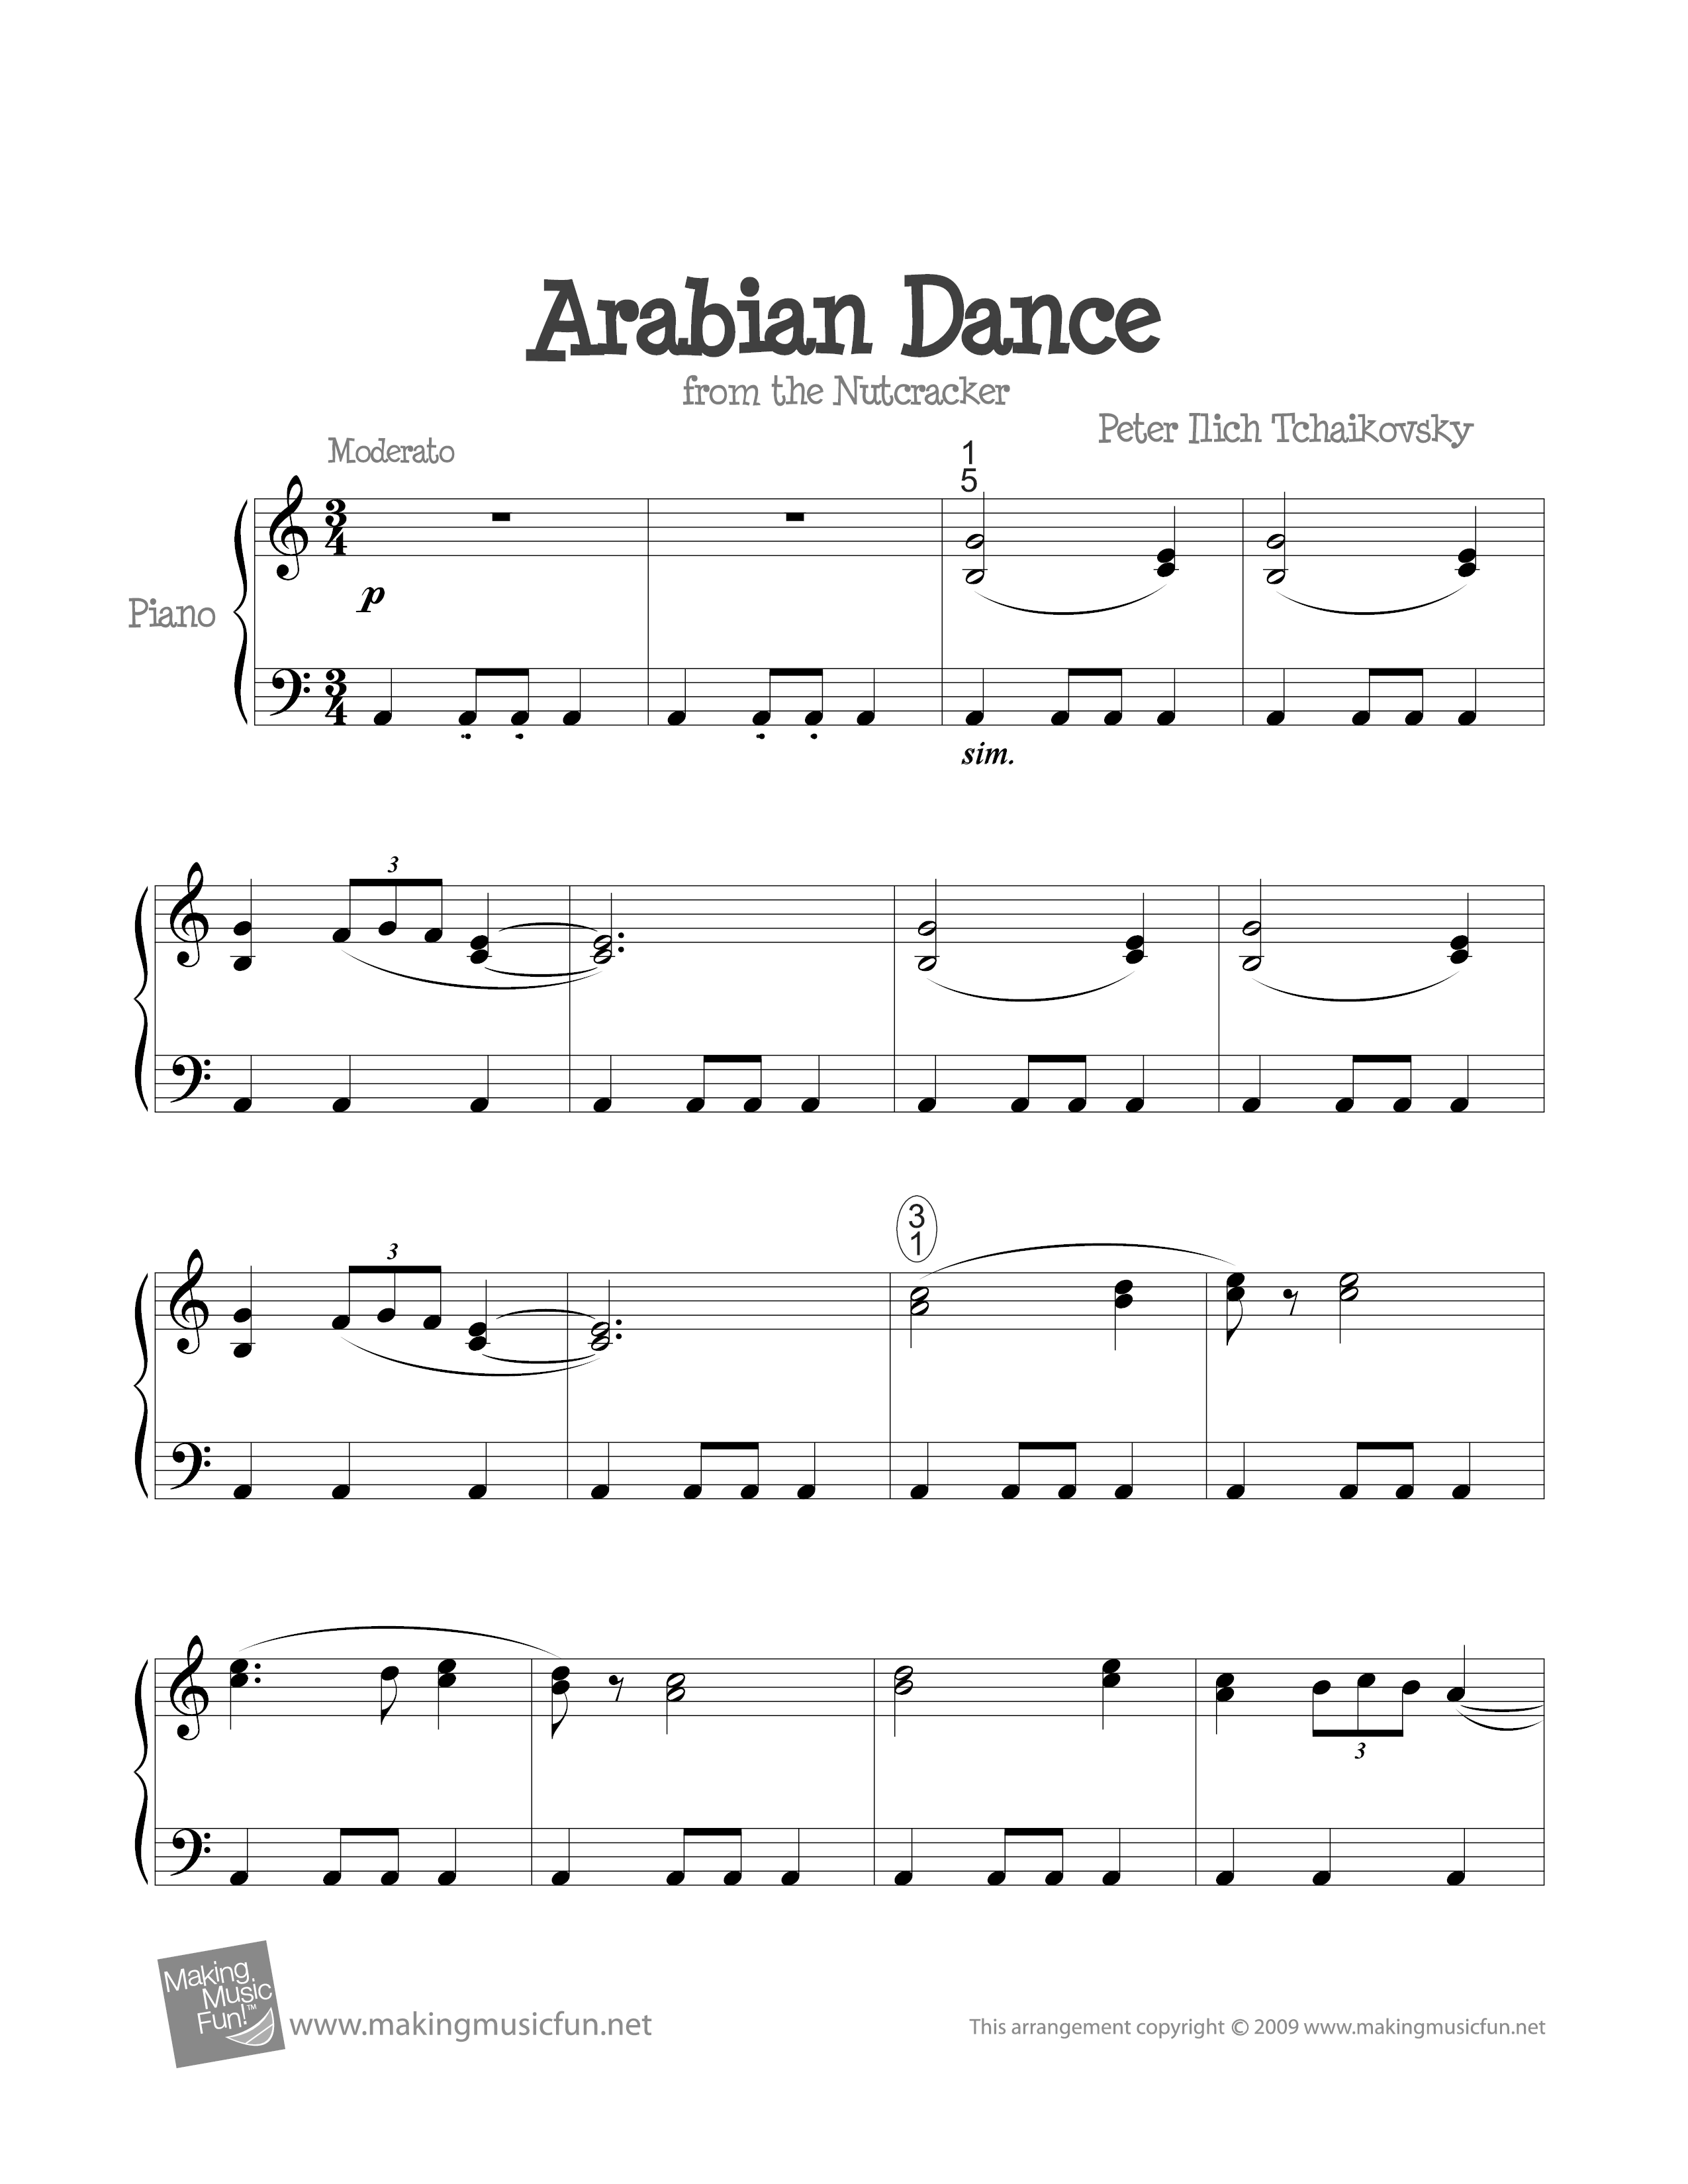 Arabian Dance (Nutcracker) Score